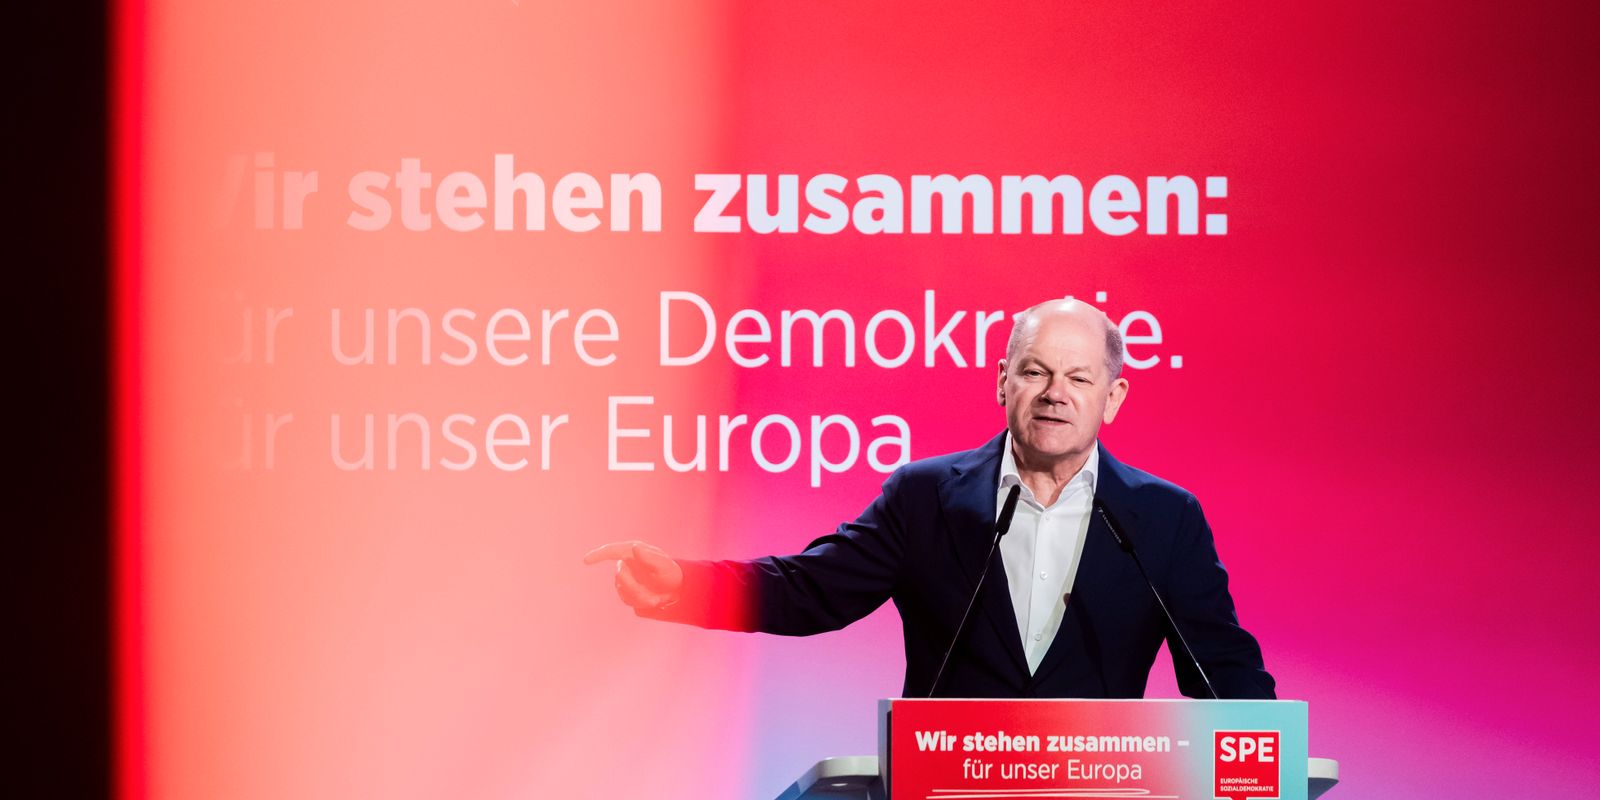 socialdemokrater i europa sluter avtal: inget samarbete med högerextrema